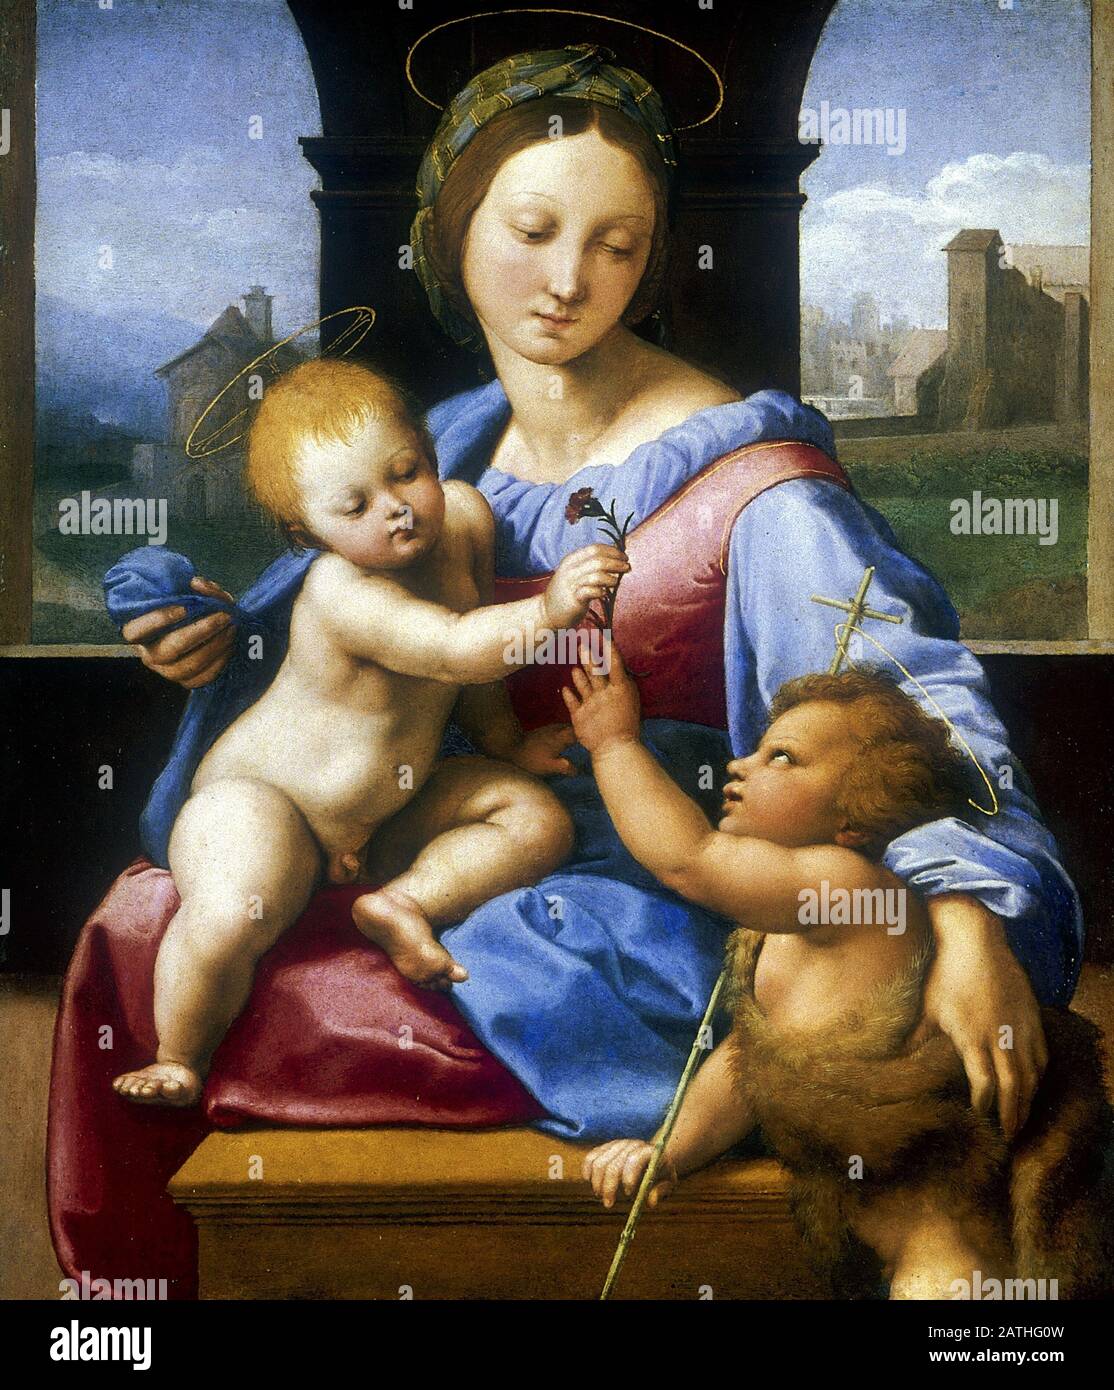 Raffaello Sanzio da Urbino connu sous le nom de Raphael école italienne la Madonna et l'enfant avec le bébé Baptiste (La Madonna Garvagh) Vers 1509-1510 huile sur bois (38,9 x 32,9 cm) Londres, National Gallery Banque D'Images